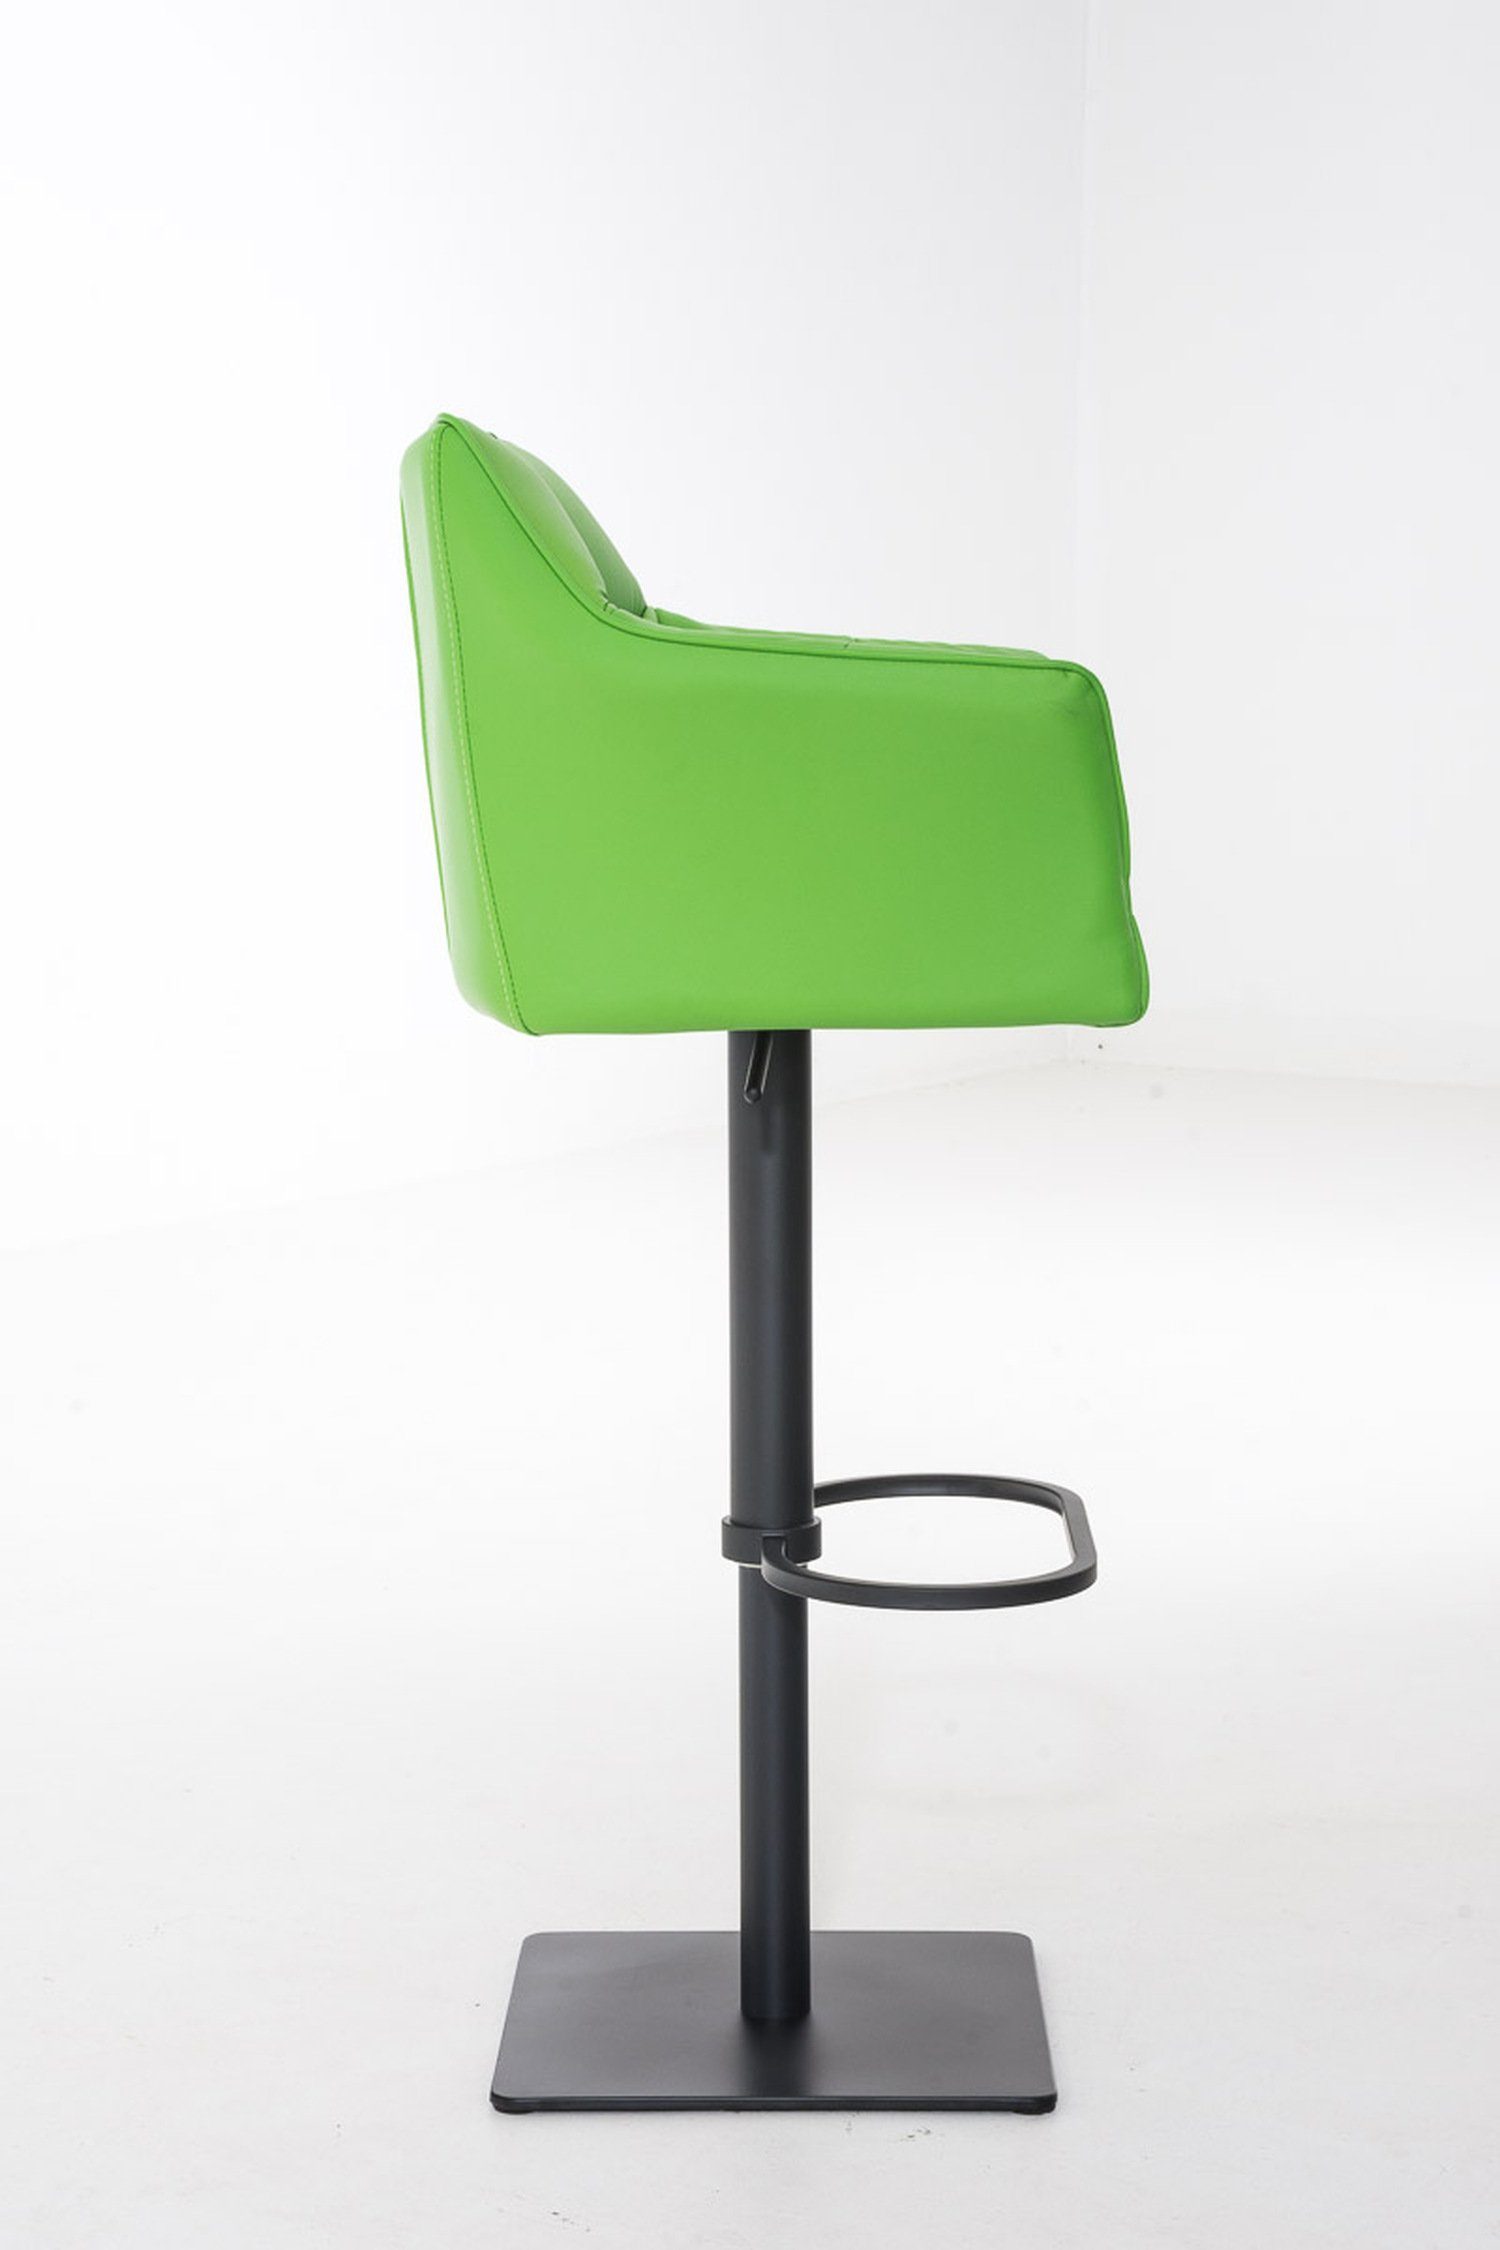 & matt Hocker (mit Metall TPFLiving Rückenlehne und 360° - Barhocker für - Kunstleder Fußstütze Küche), Sitzfläche: drehbar - Grün Damaso schwarz Theke